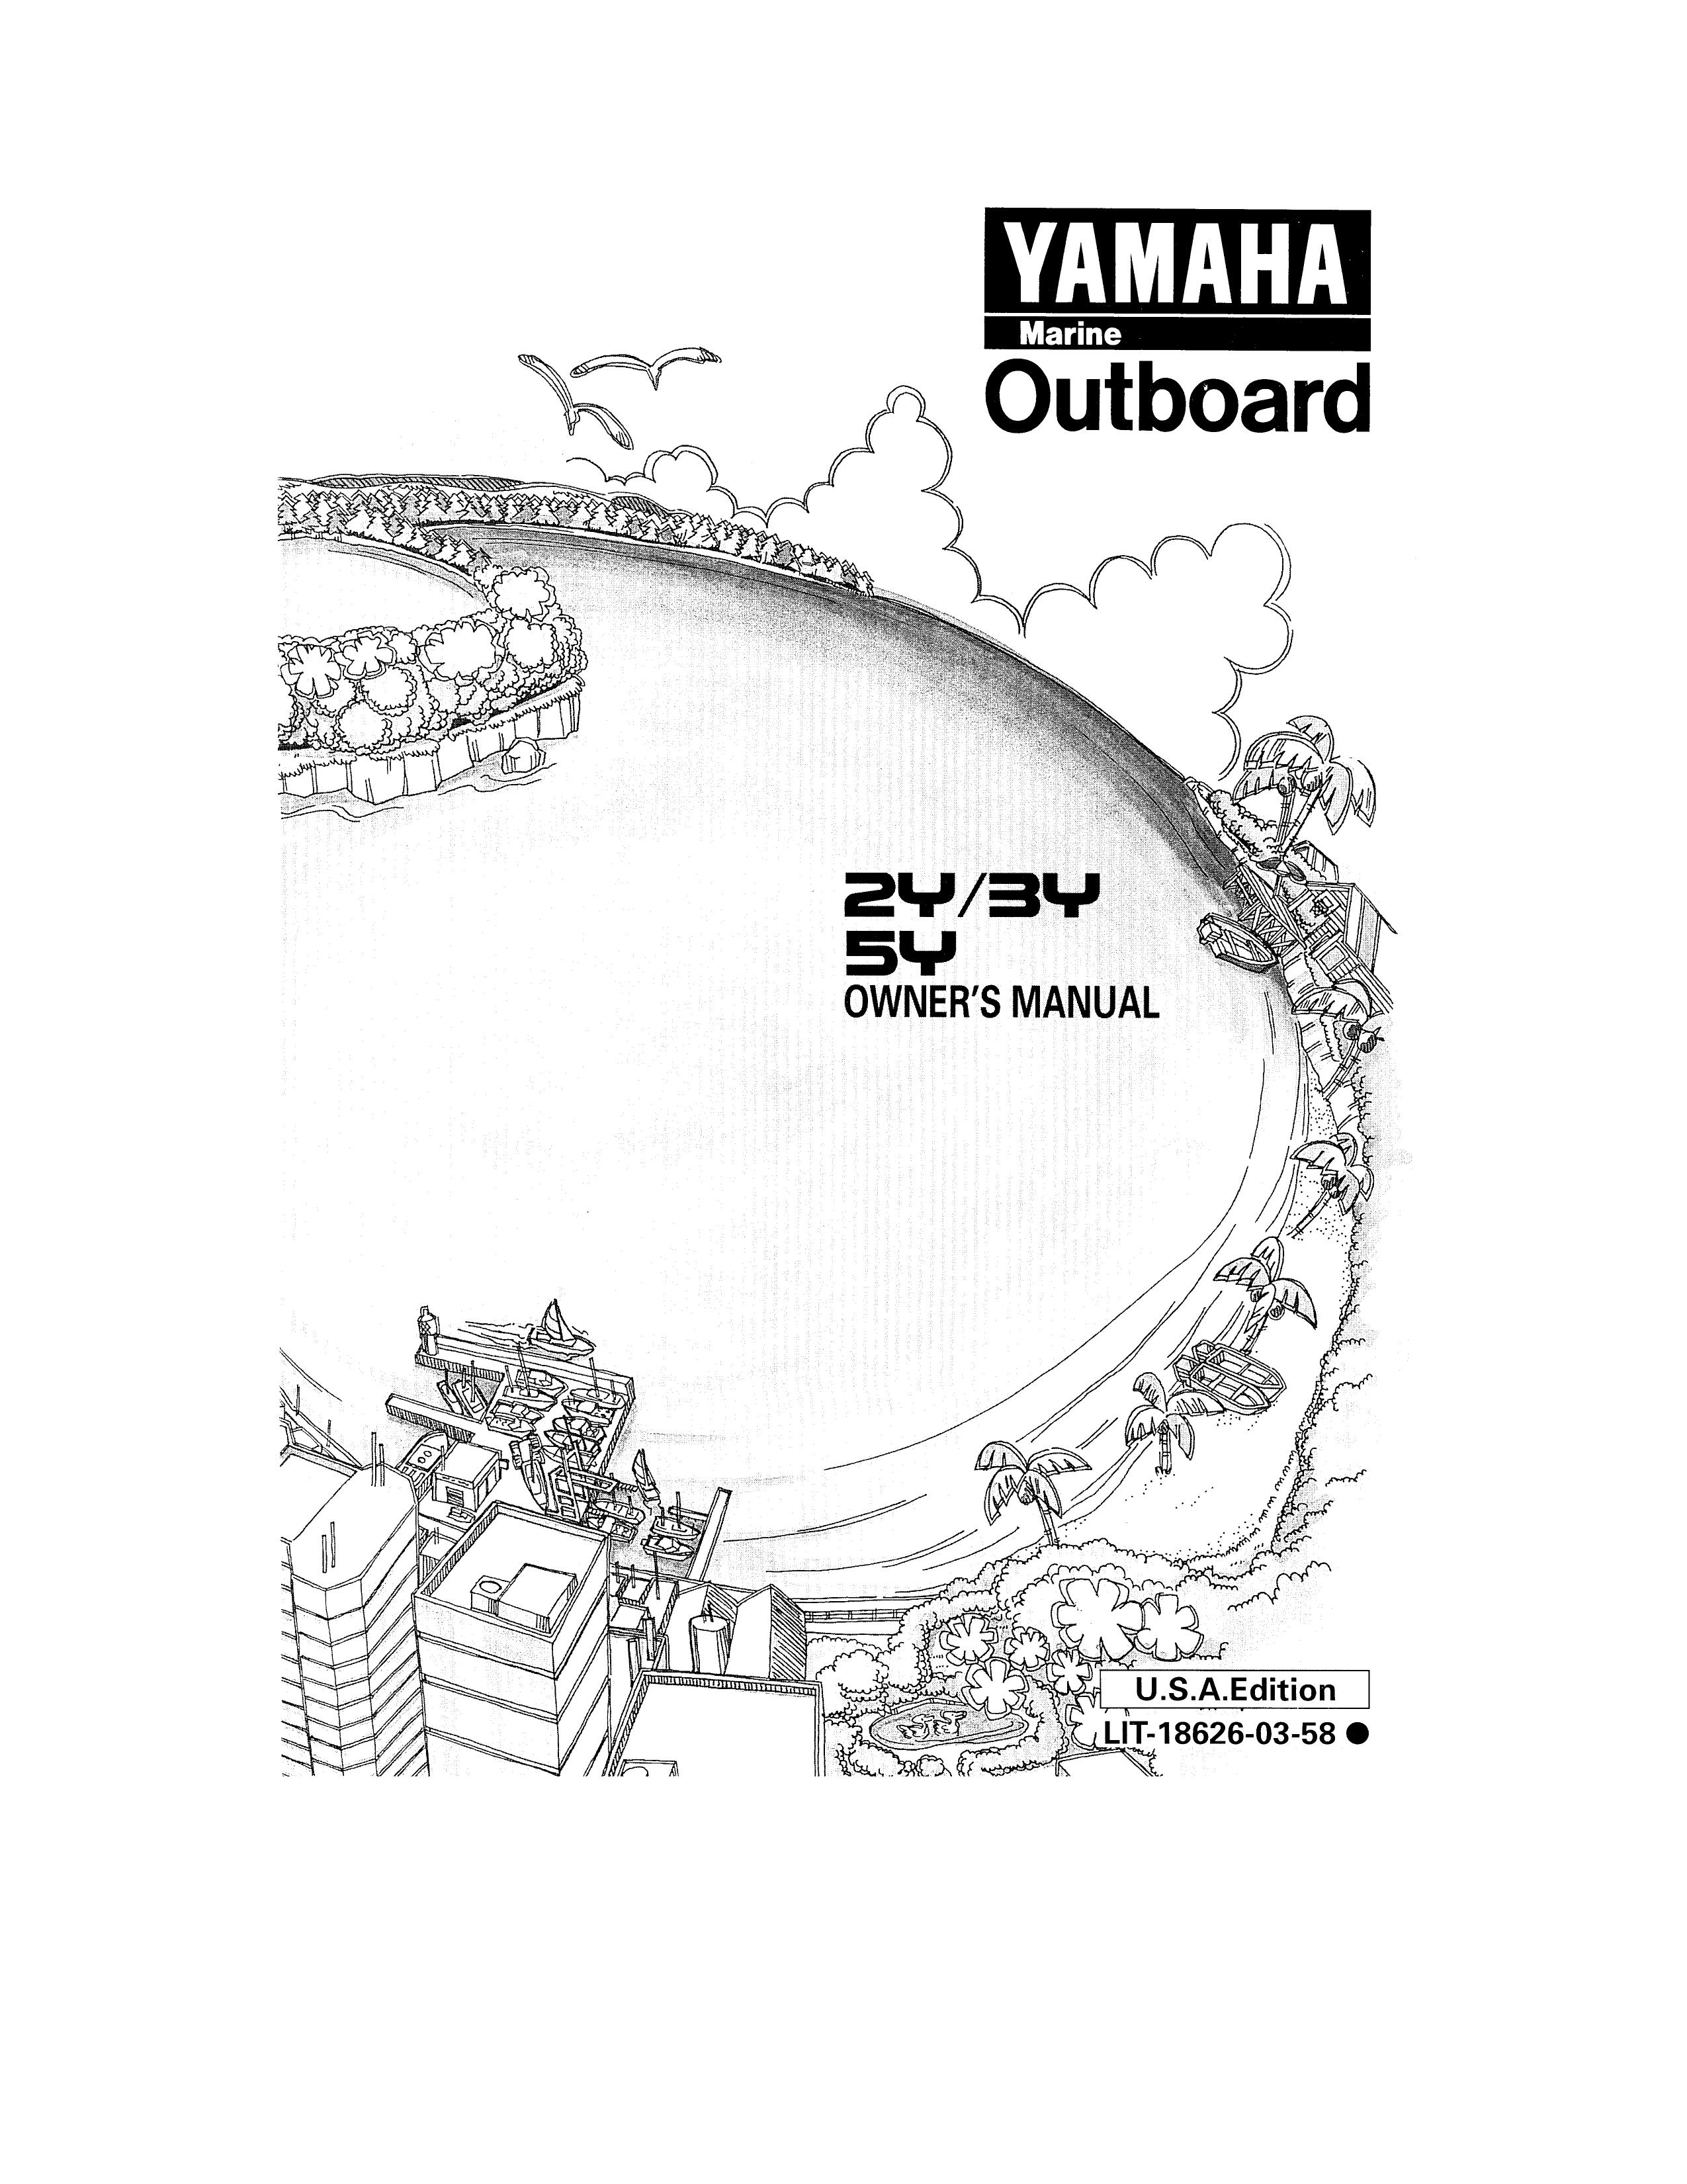 Yamaha 2y/3y/5y Outboard Motor User Manual